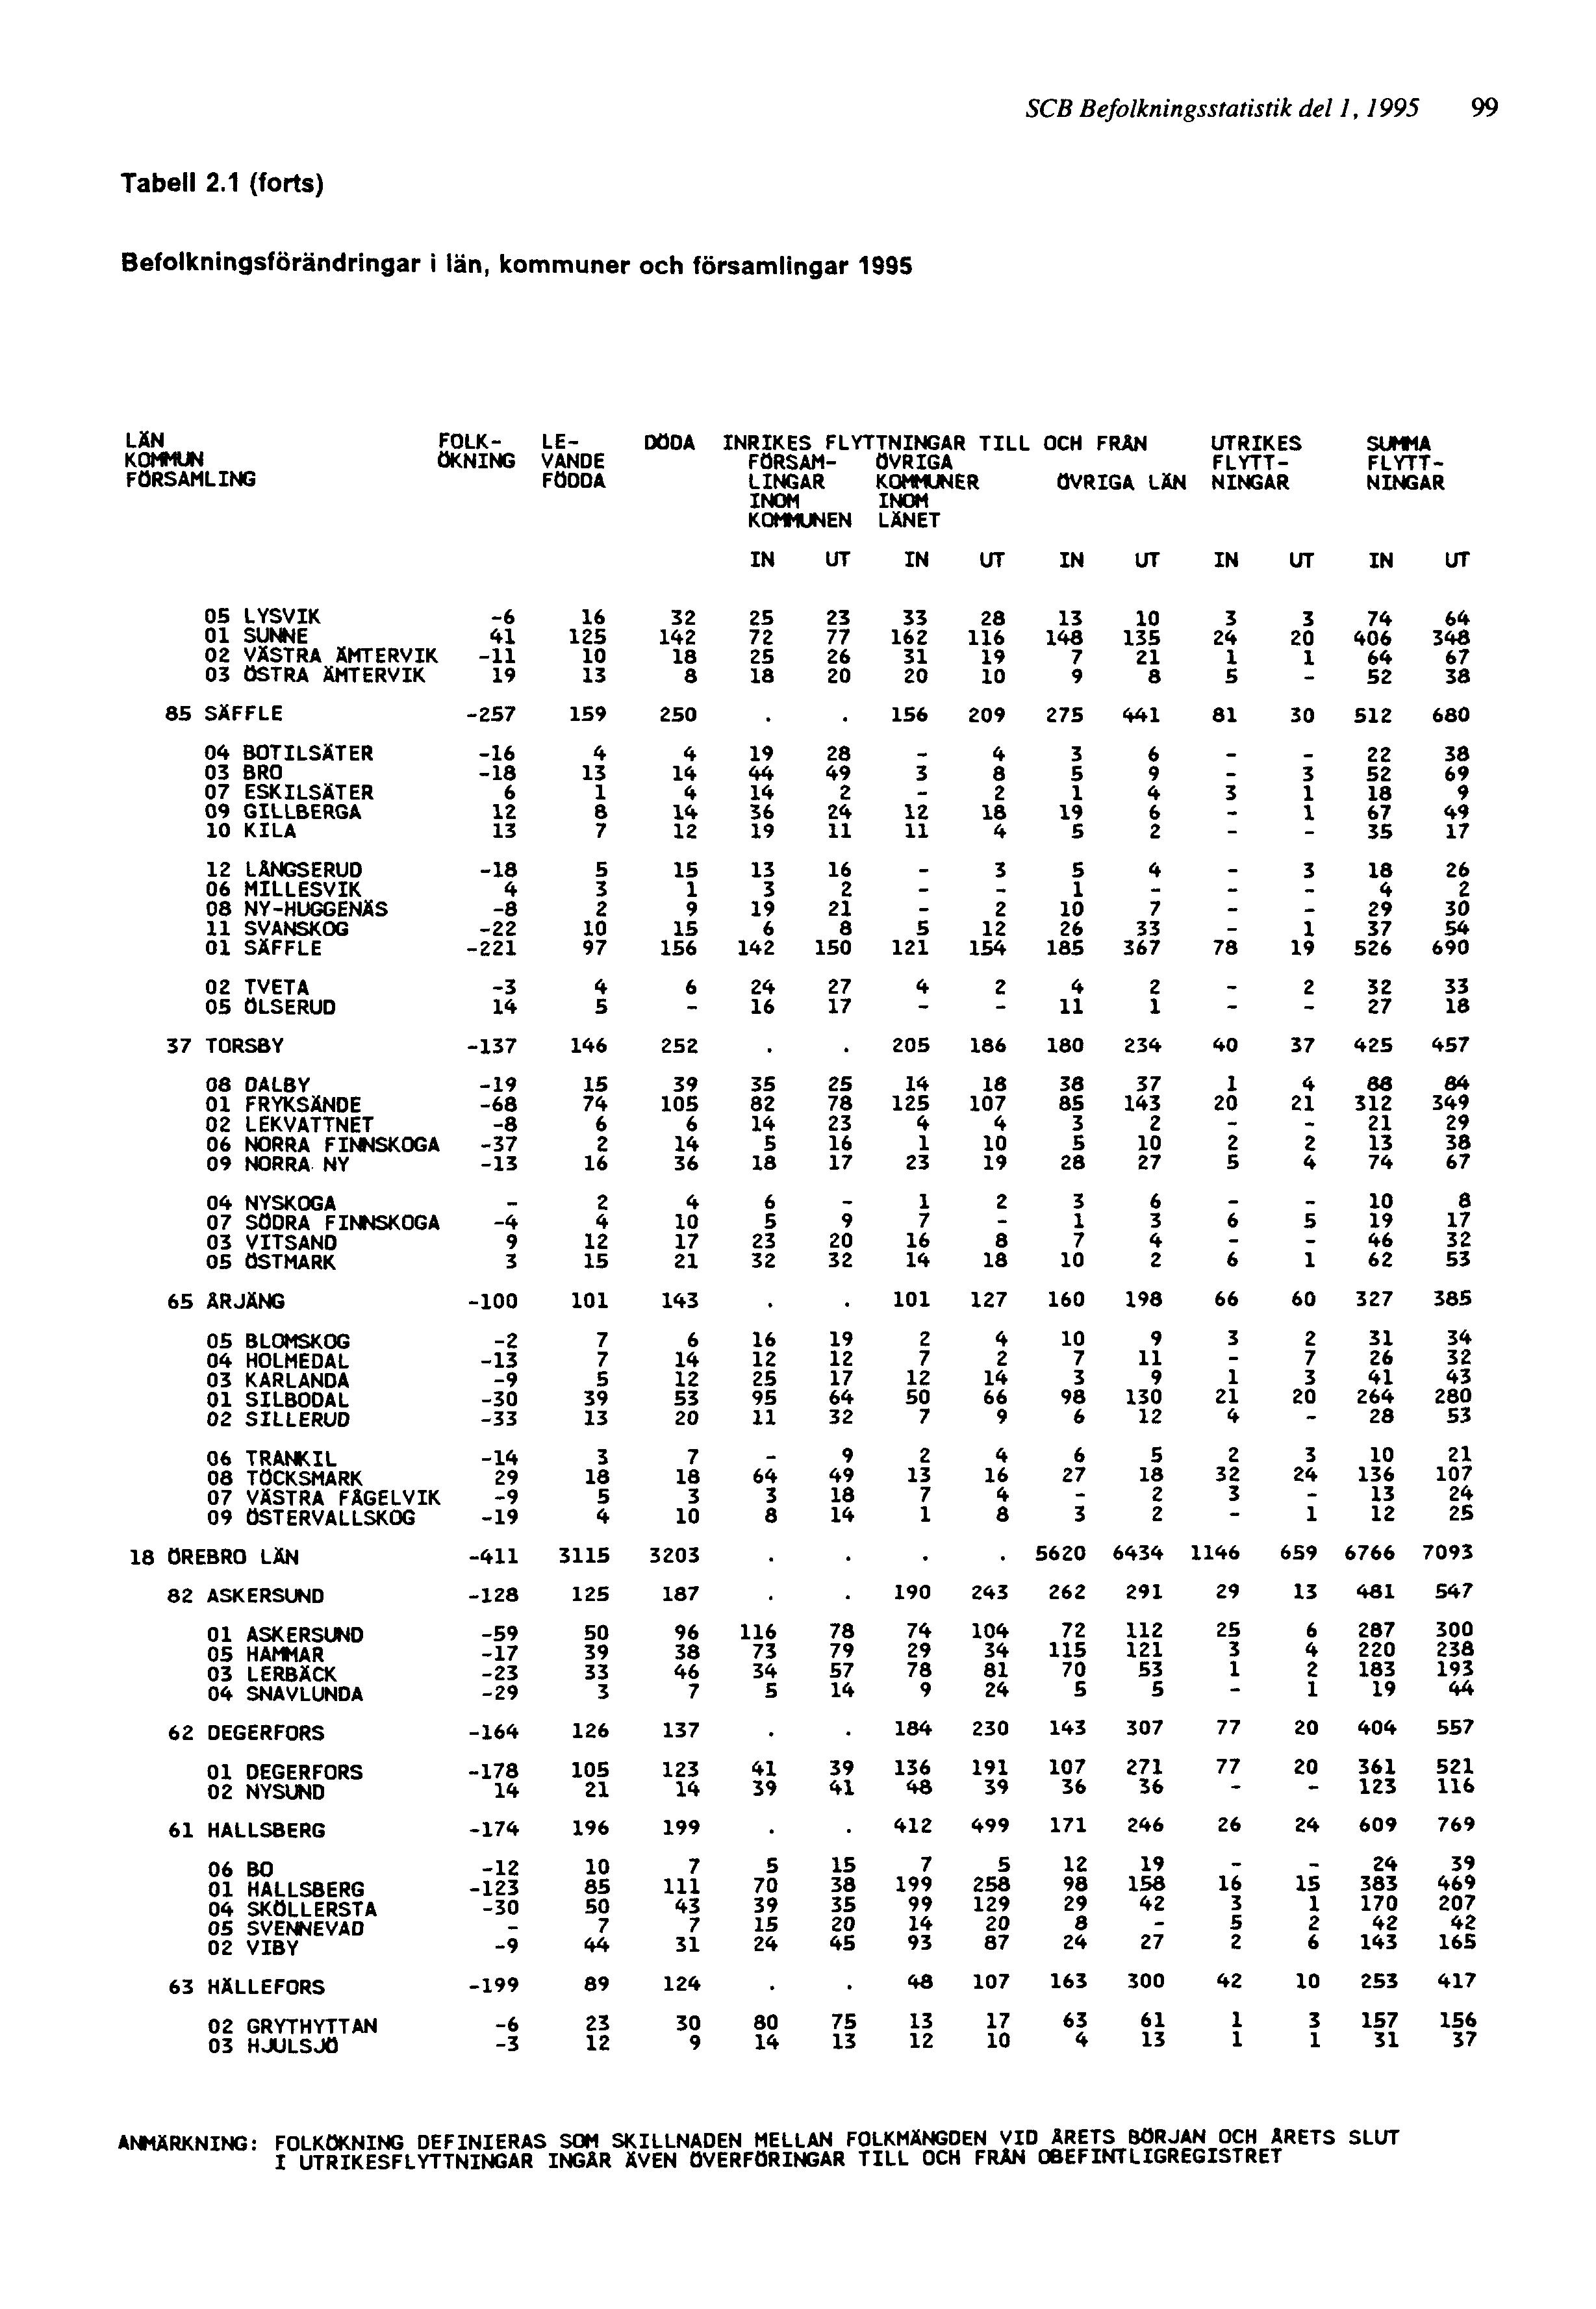 SCB Befolkningsstatistik del 1, 1995 99 ANMÄRKNING: FOLKÖKNING DEFINIERAS SOM SKILLNADEN MELLAN FOLKMÄNGDEN